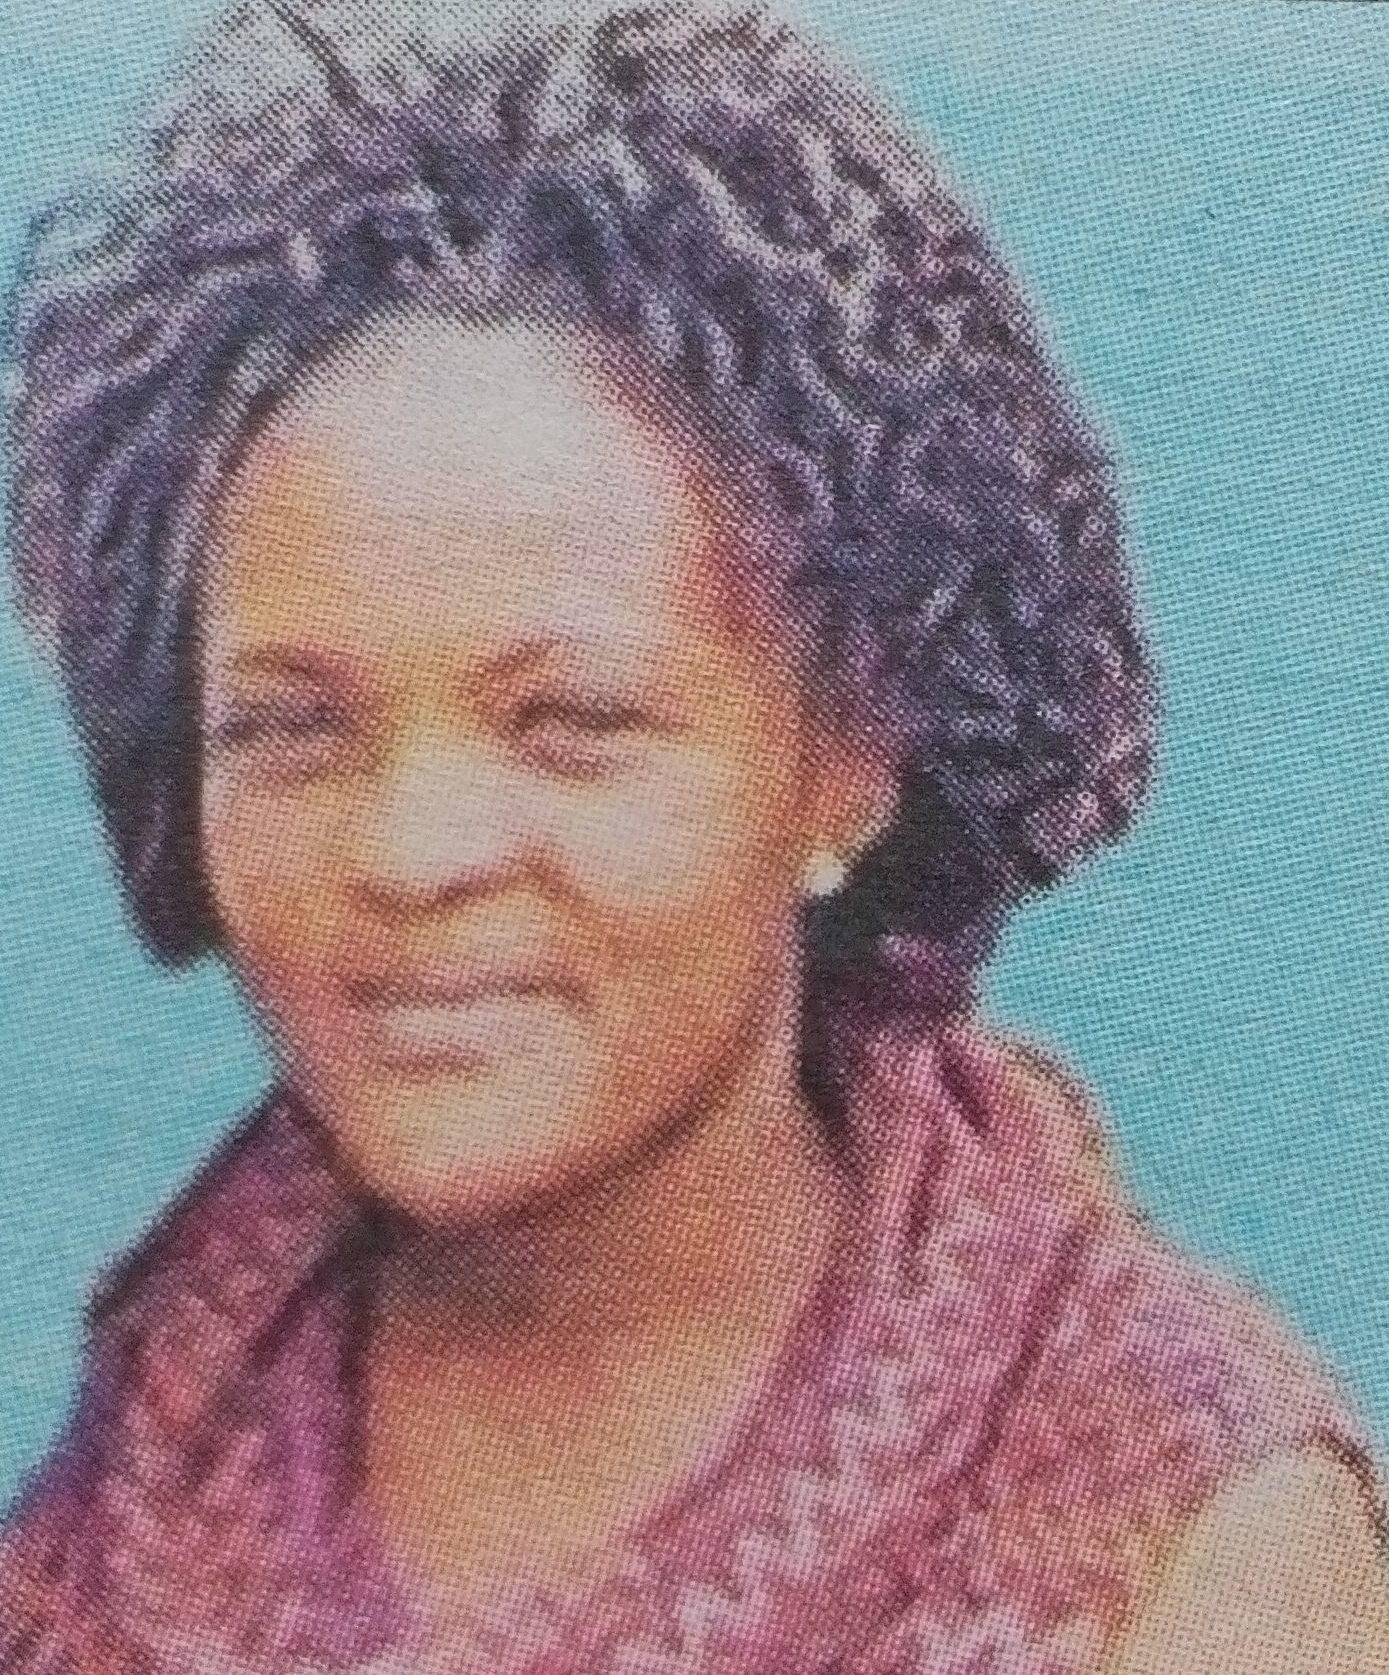 Obituary Image of Sarah Kanini Gatumu (Nyina wa Mark)